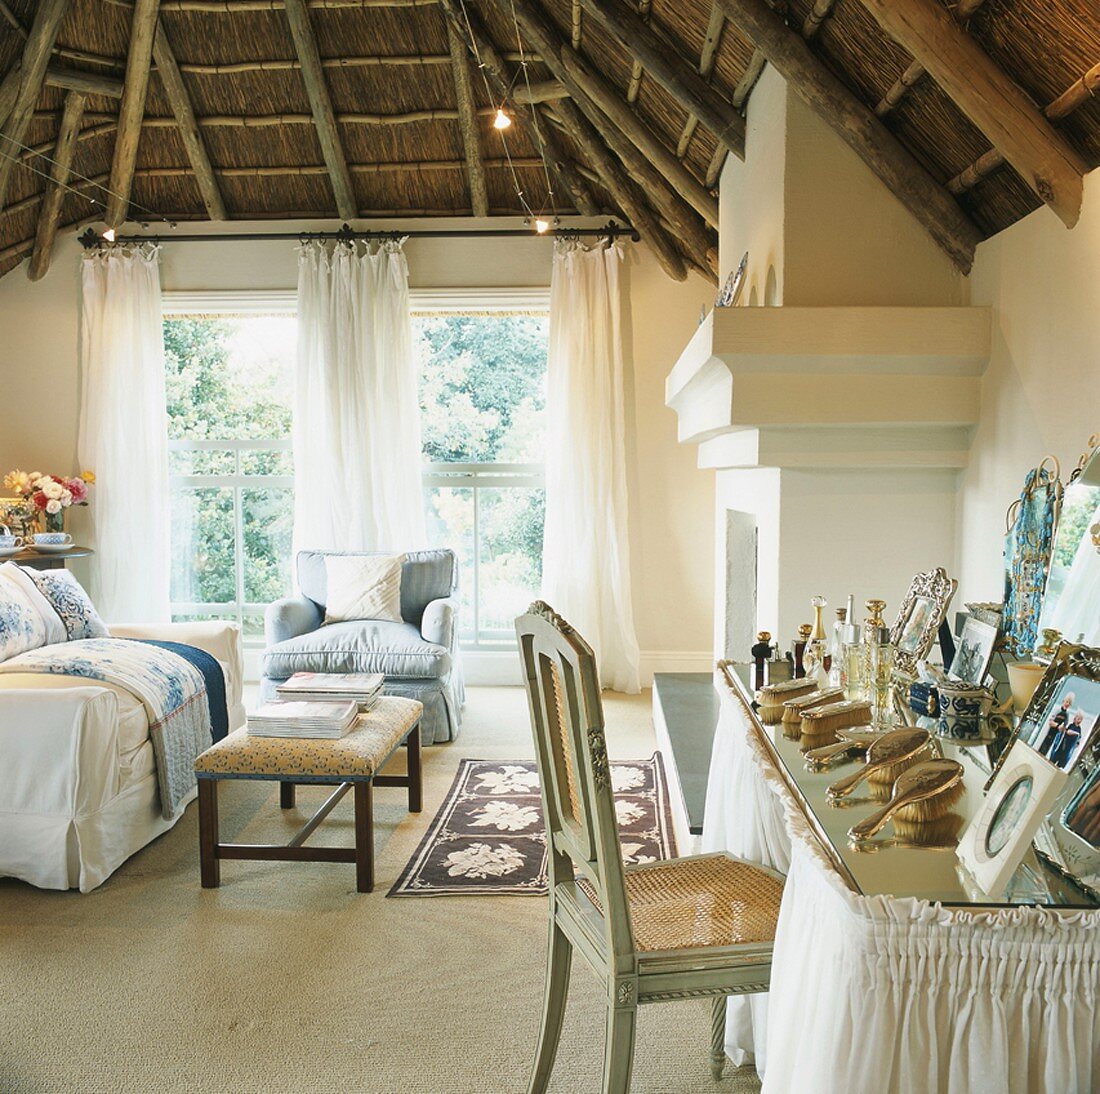 Die traditionelle Holzdecke bildet einen starken Kontrast zur eleganten Wohnzimmereinrichtung mit romantischem Schminktisch